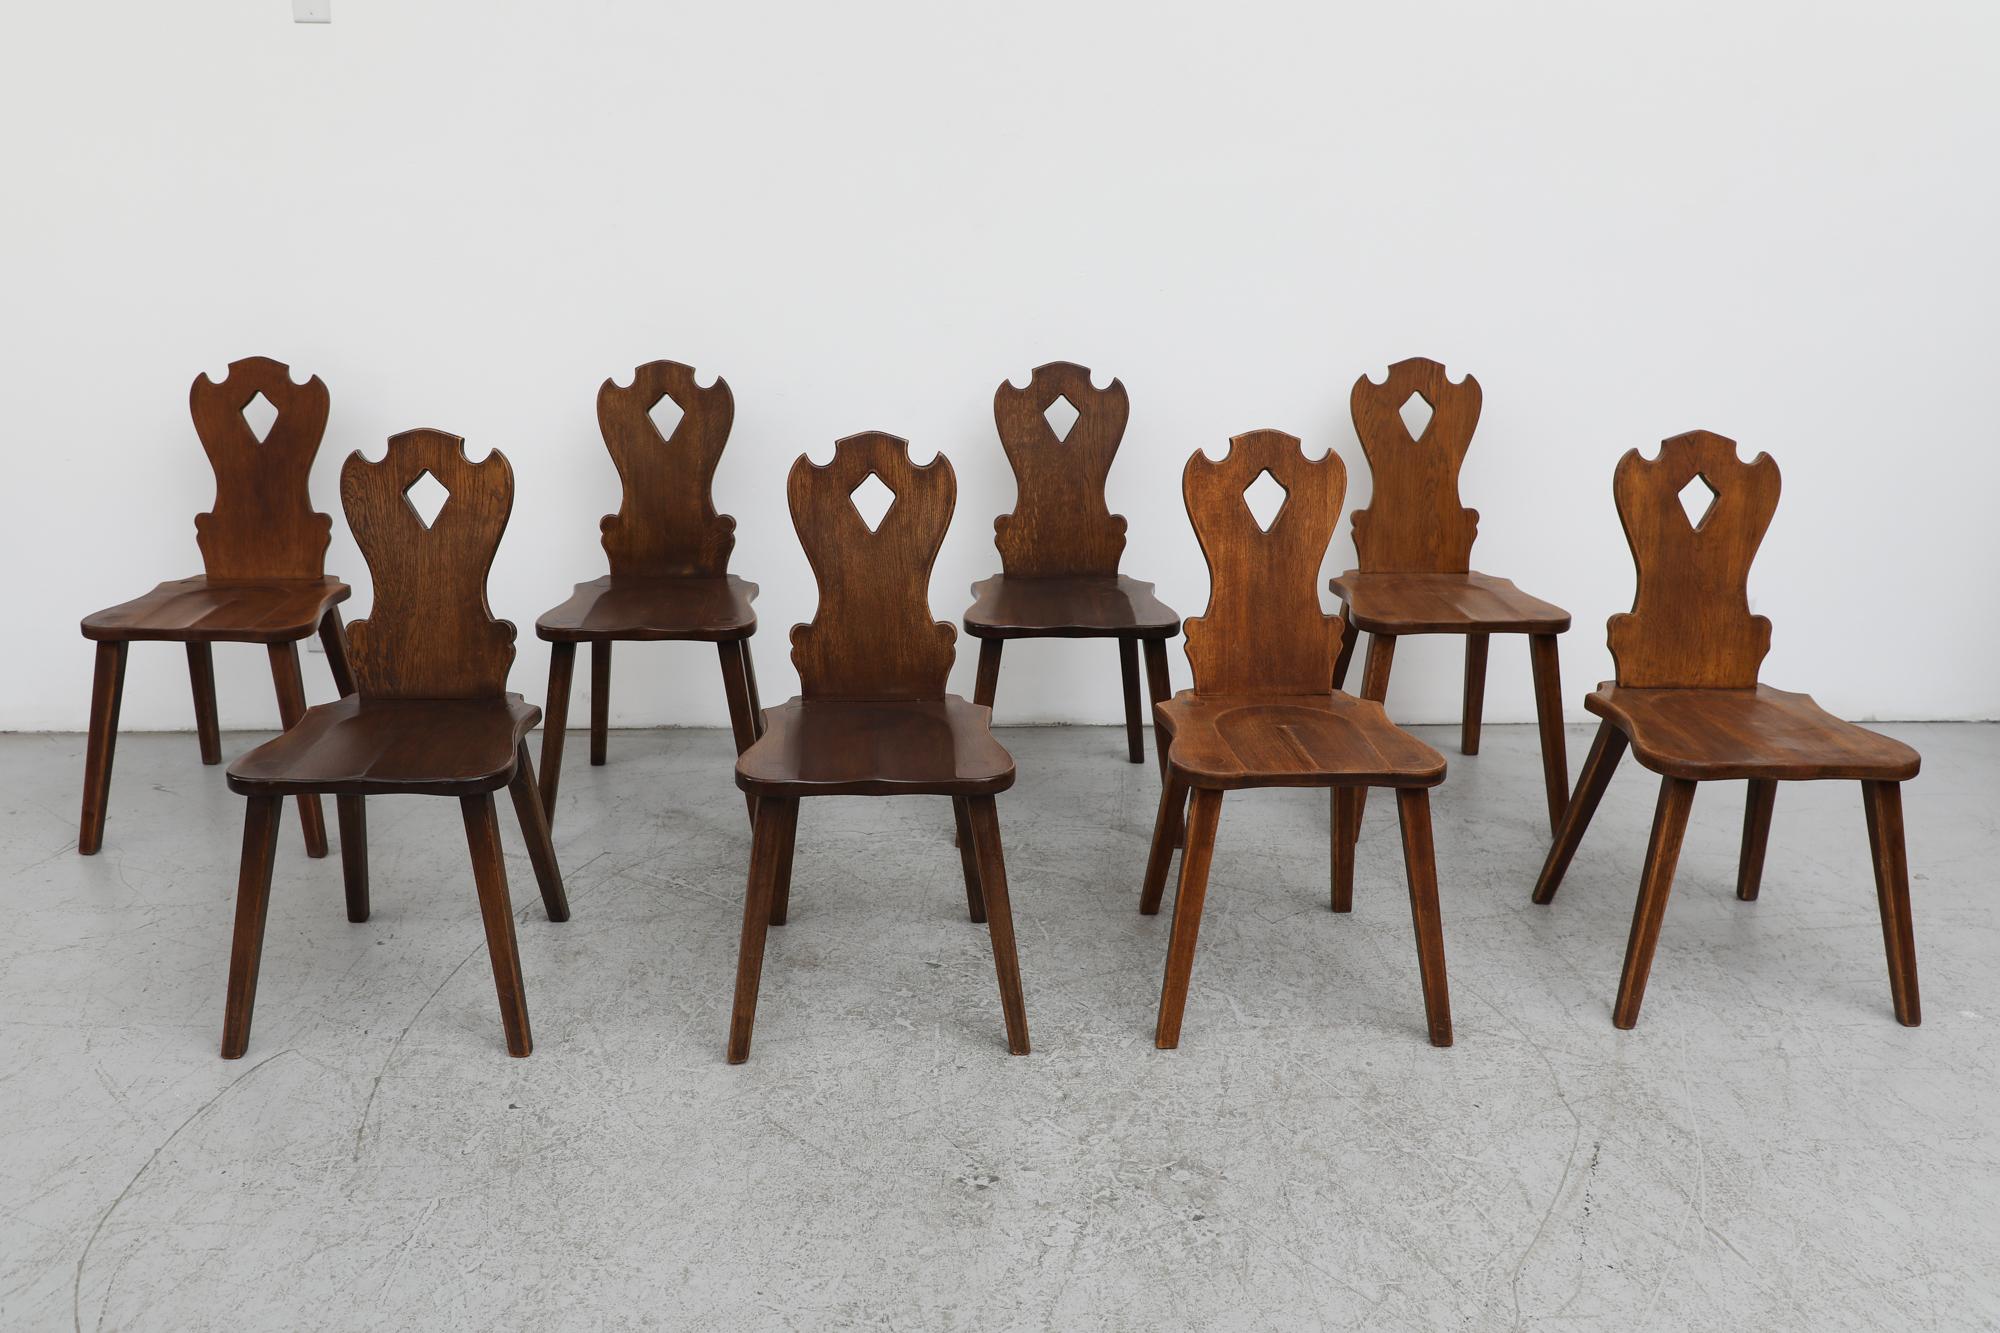 Satz von 6 Brutalist handgeschnitzt, schön organisch Massivholz Stühle. Stilistisch eine Mischung aus Tiroler Schnitzerei und schlichter Ästhetik der Jahrhundertmitte. Das Set ist in weitgehend originalem Zustand mit sichtbaren